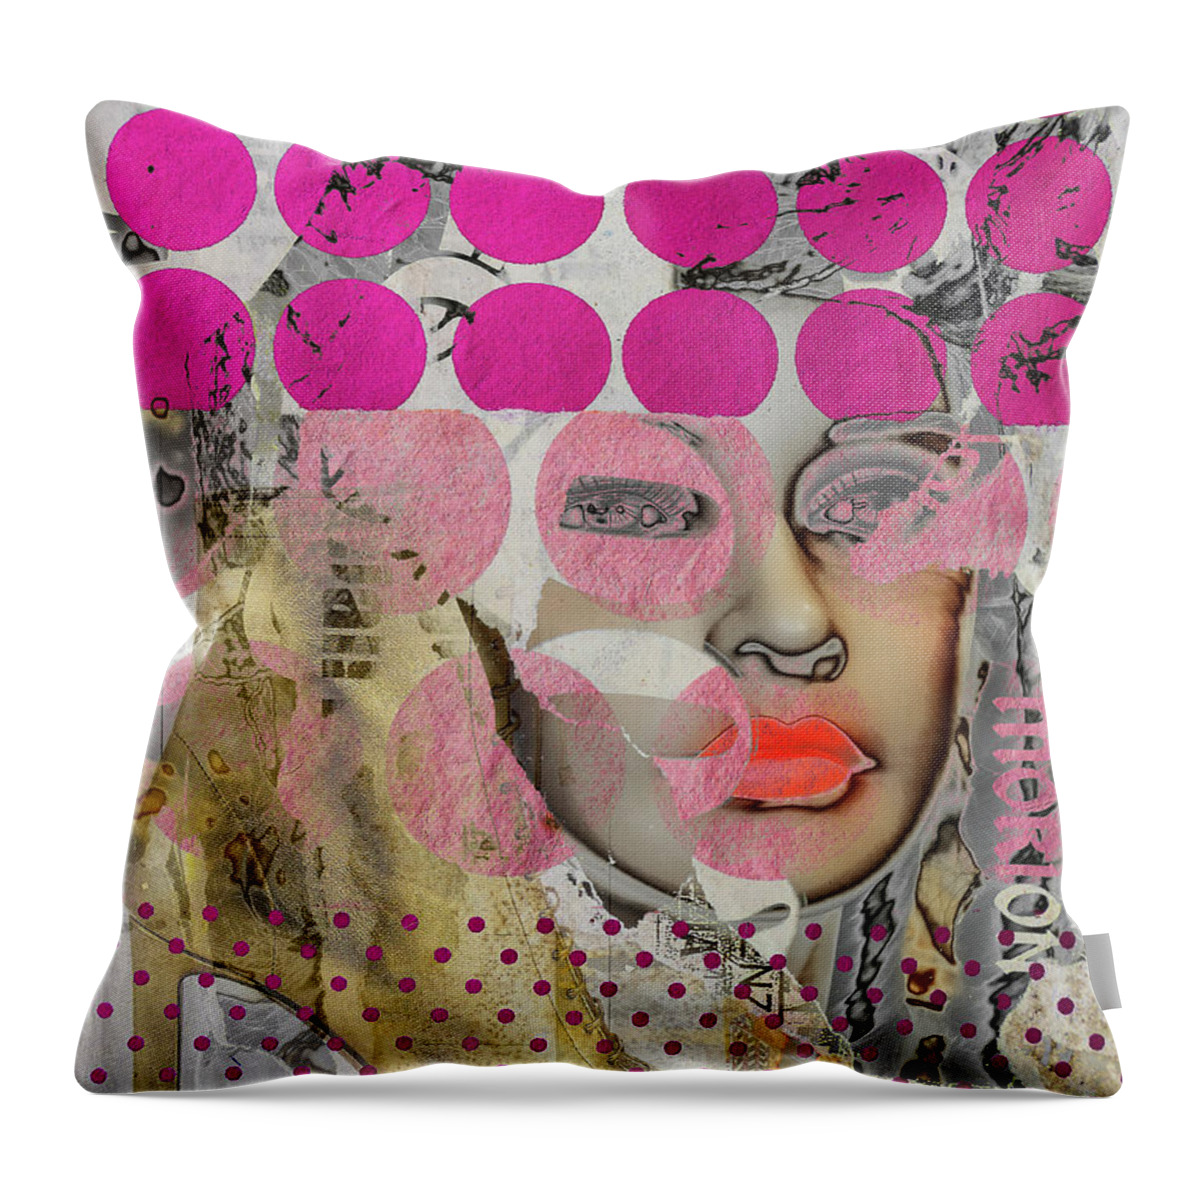 Digitalart. Modernart Throw Pillow featuring the digital art The golden boot and red lips by Gabi Hampe